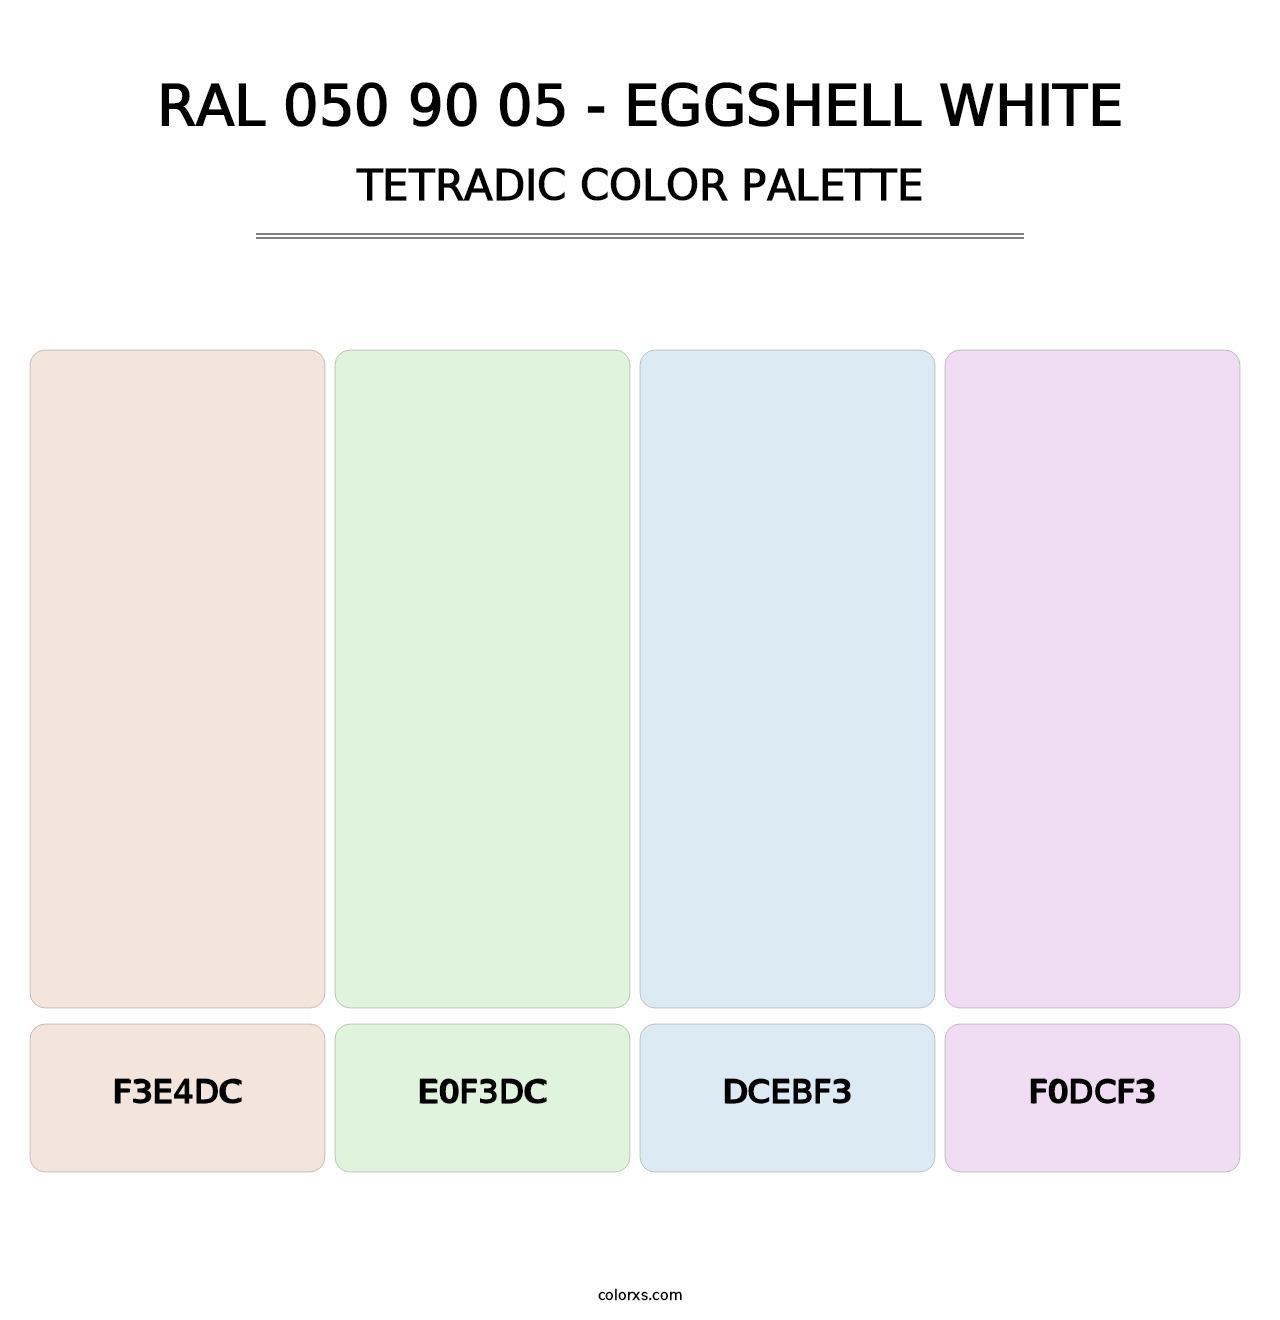 RAL 050 90 05 - Eggshell White - Tetradic Color Palette